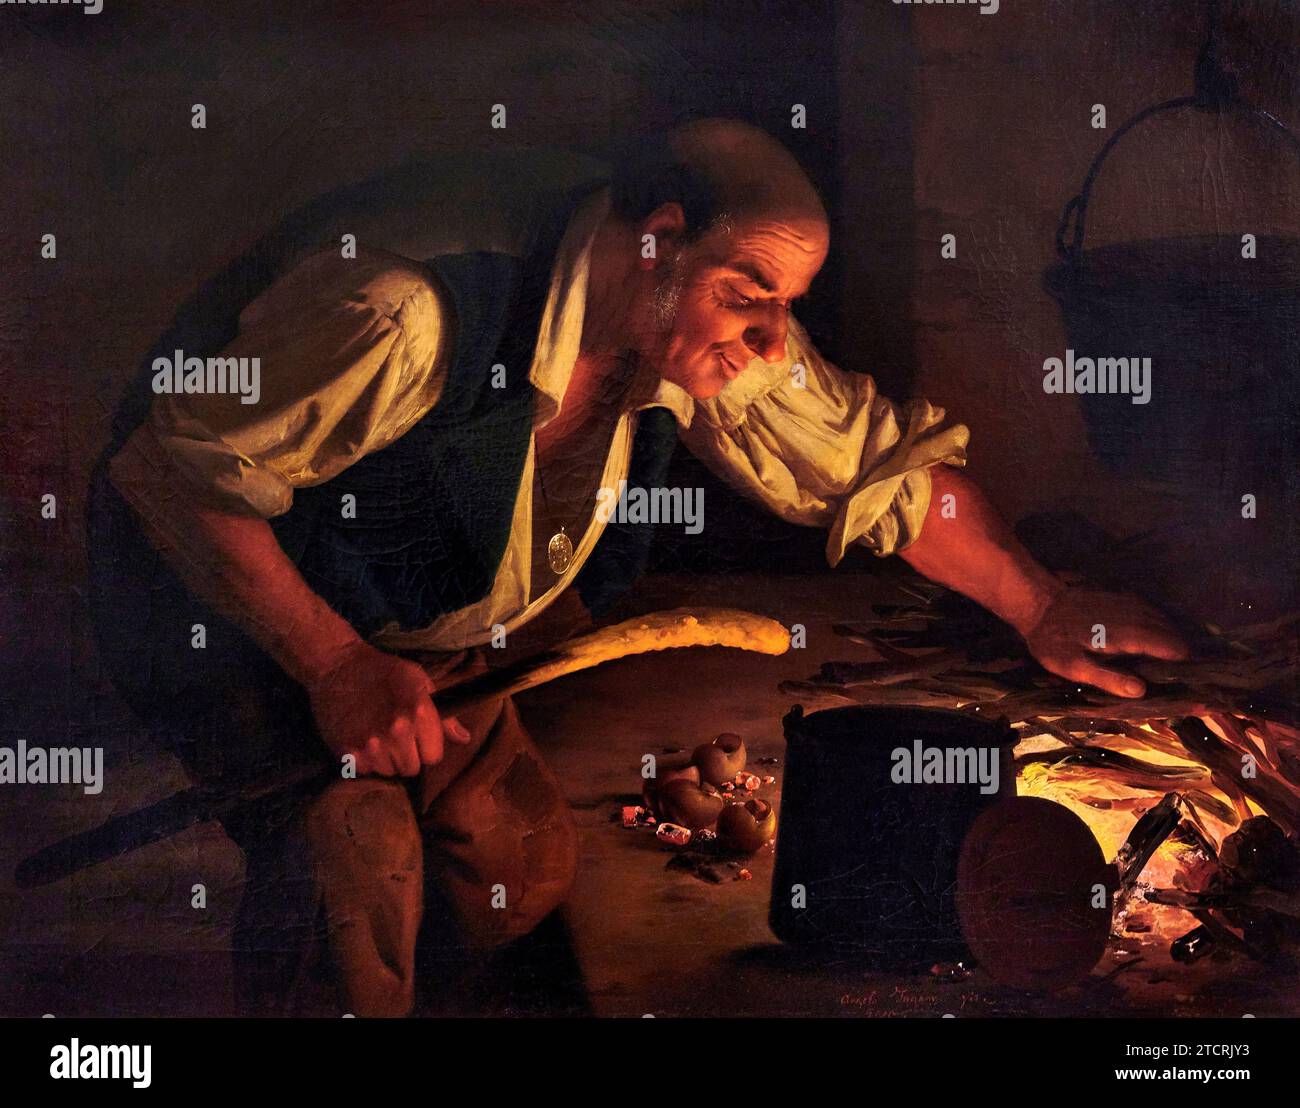 Uomo che cucina lumache e polenta davanti al caminetto - olio su tela - Angelo Inganni - 1855 - Brescia, collezione Italo Segalini Stockfoto